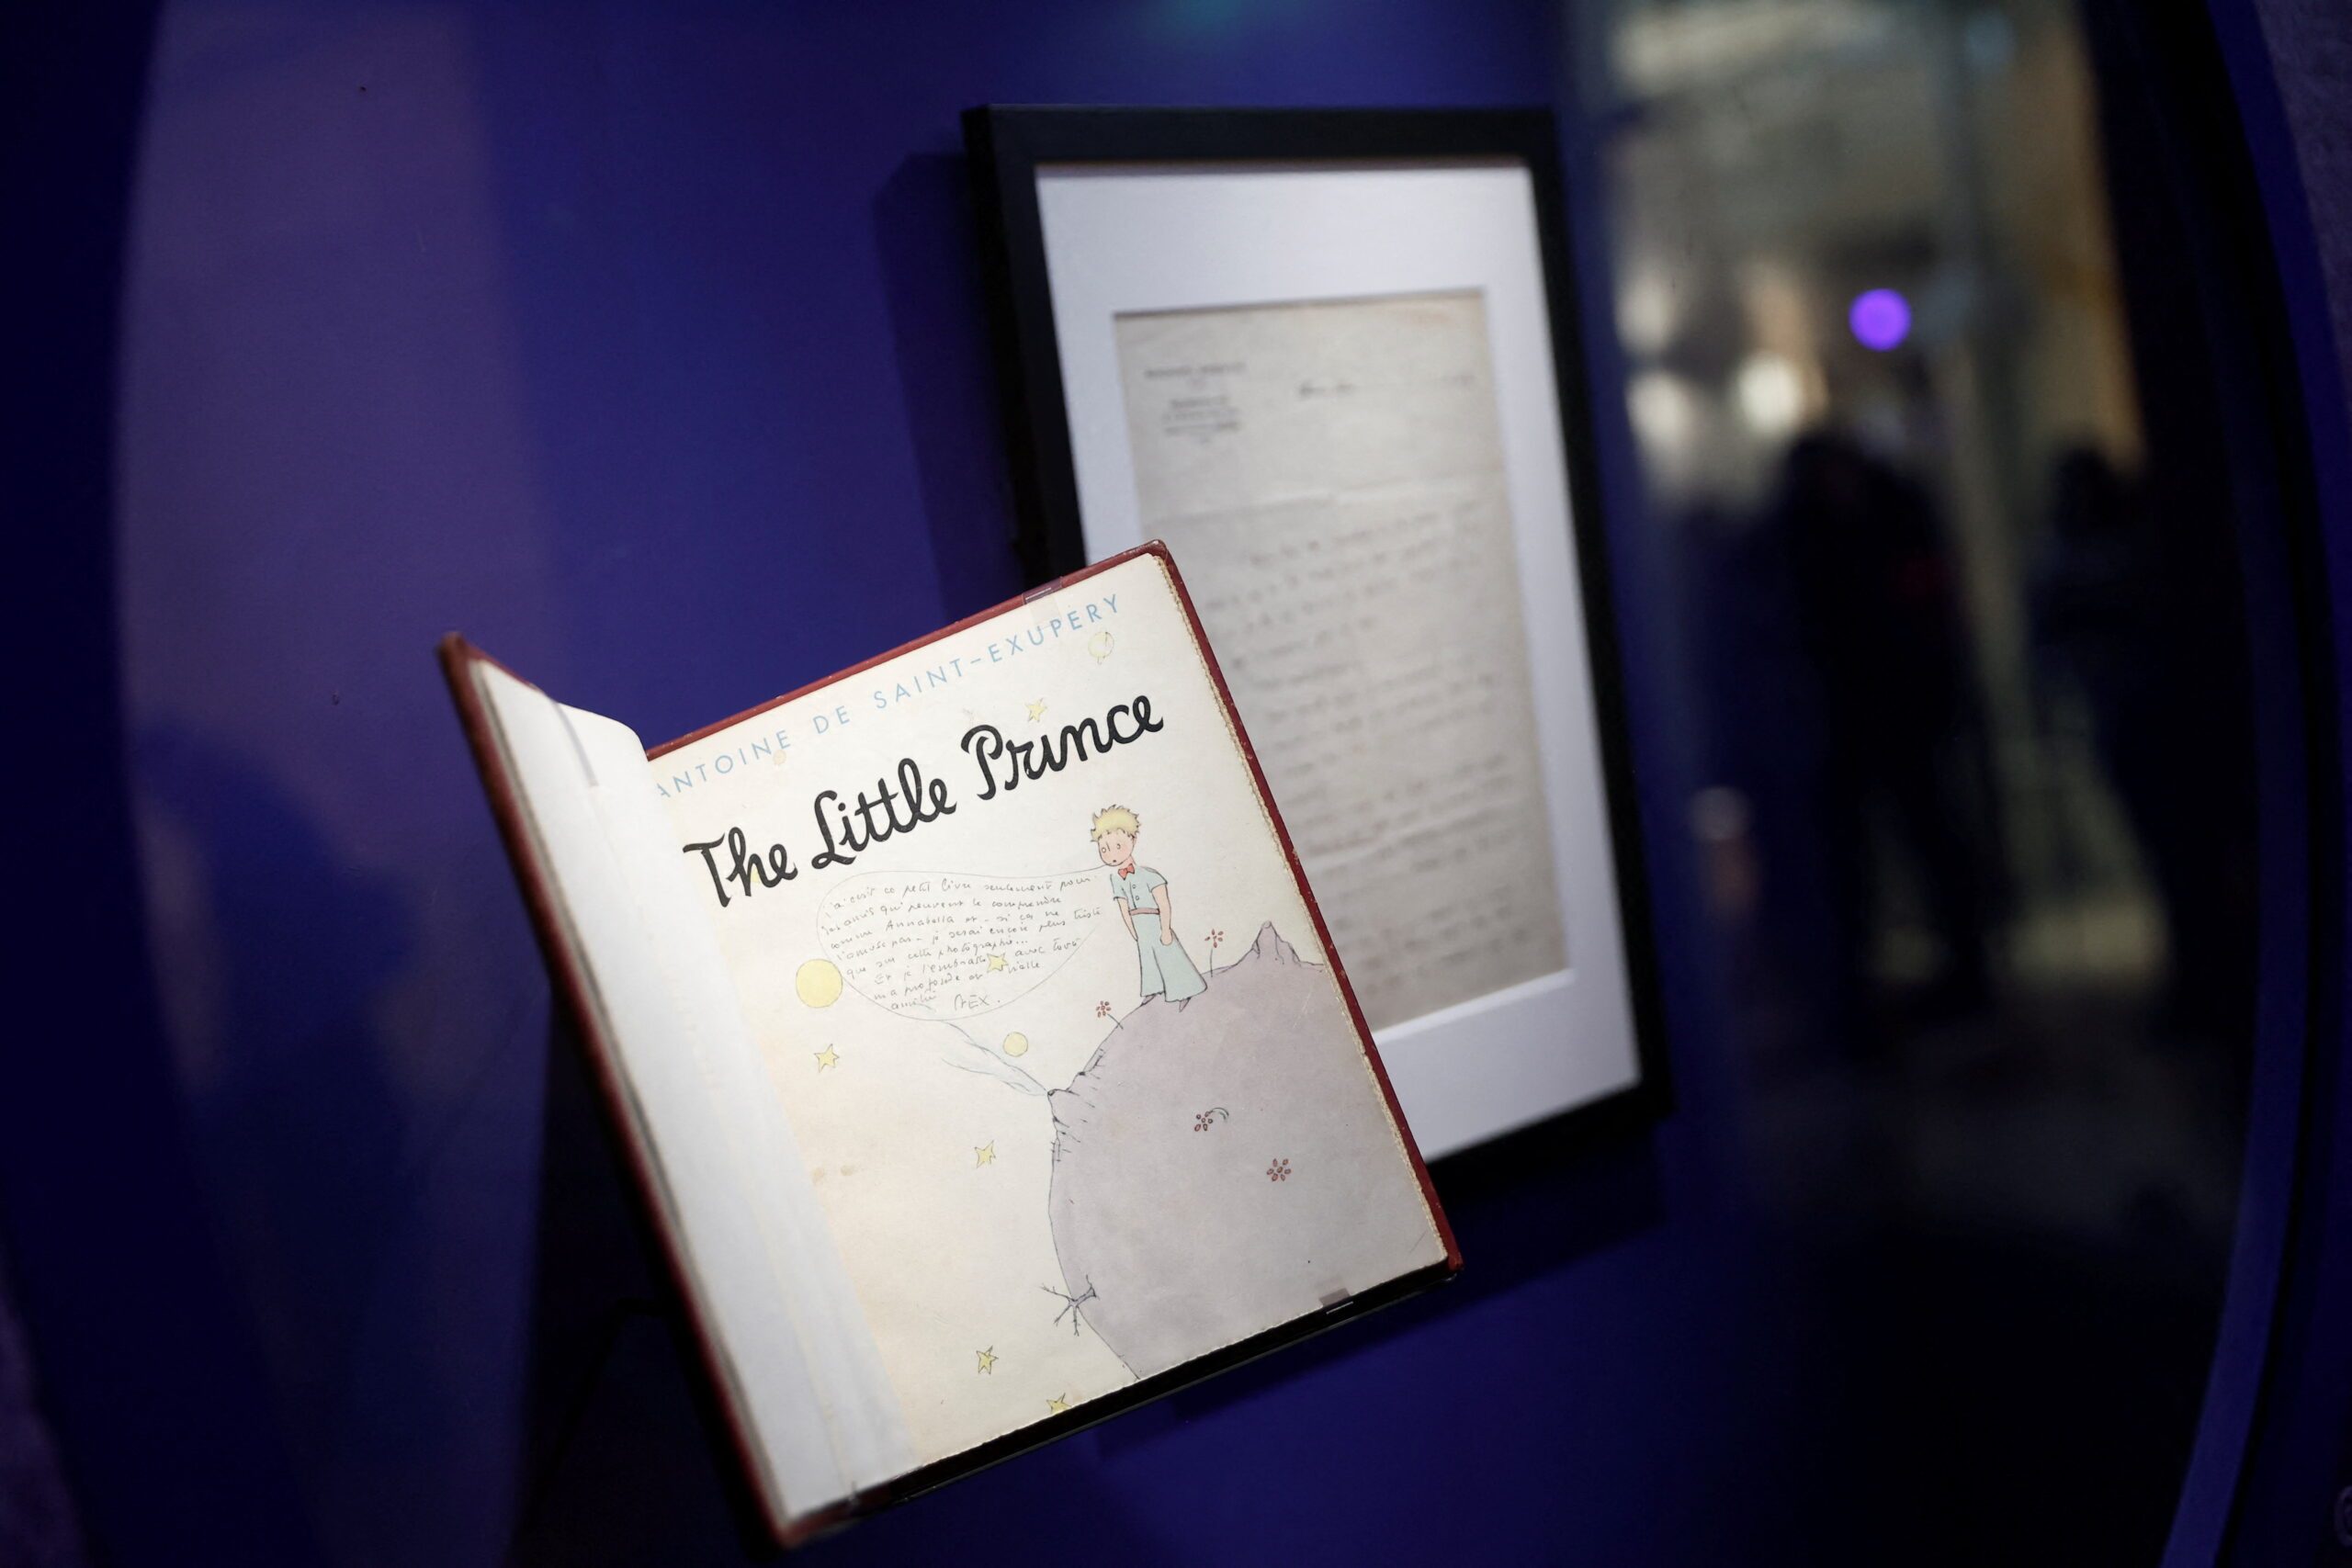 Paris exhibit shows ‘The Little Prince’ author as visual artist